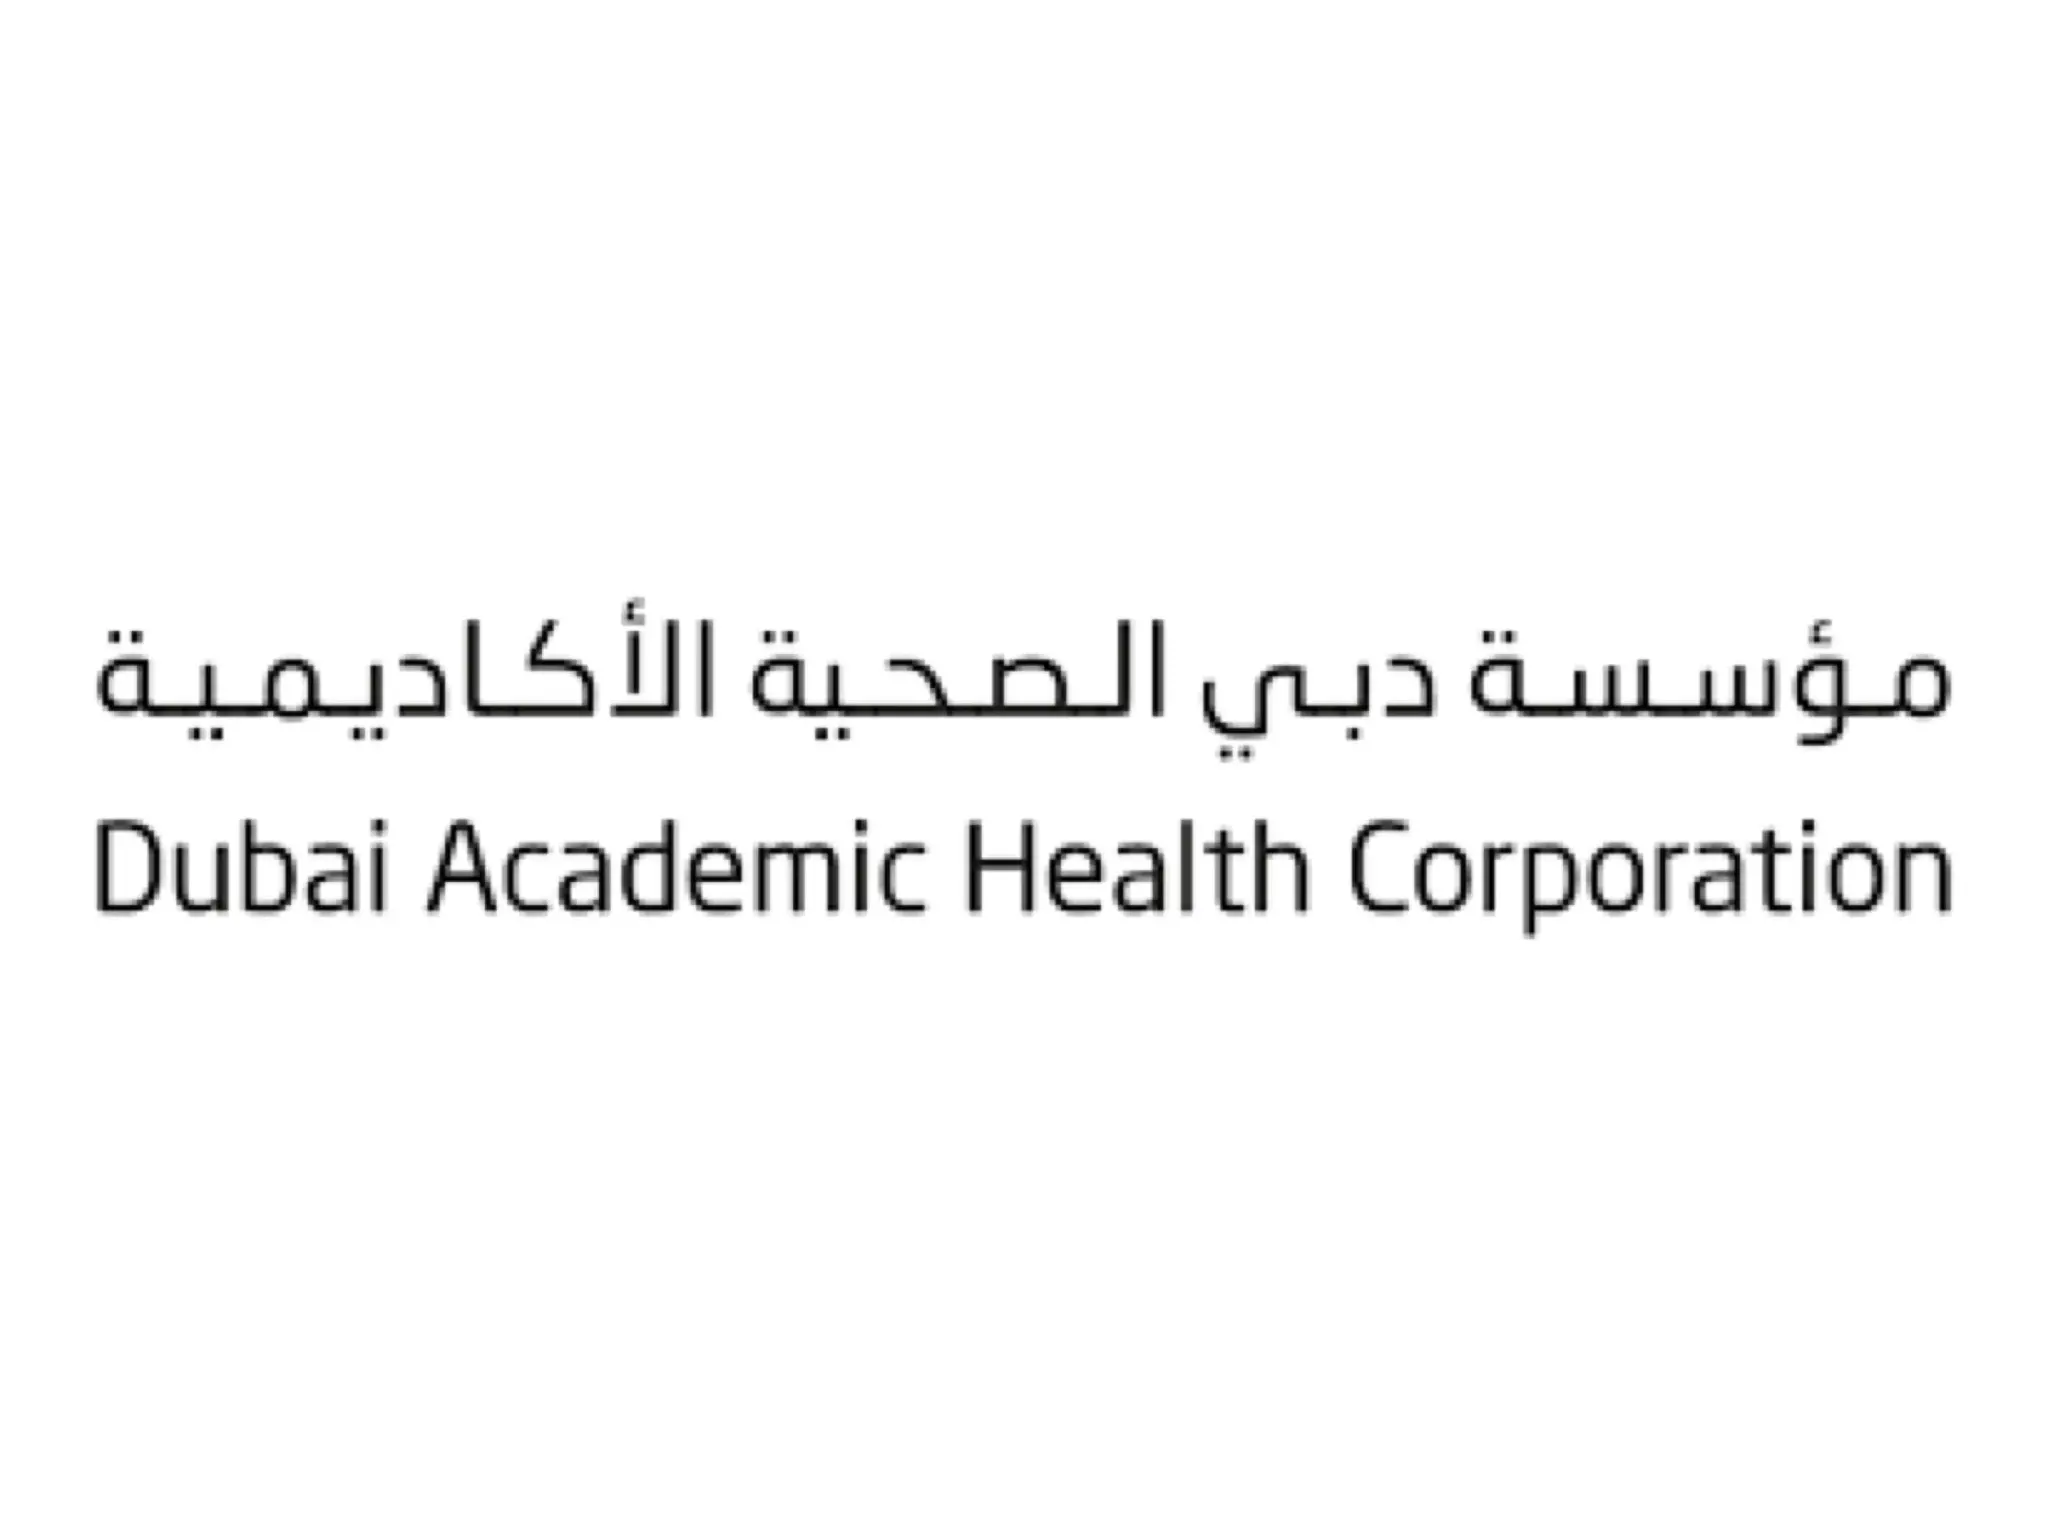 دبي الصحية تكشف عن استعدادها لتوفير الرعاية الصحية خلال احتفالات رأس السنة